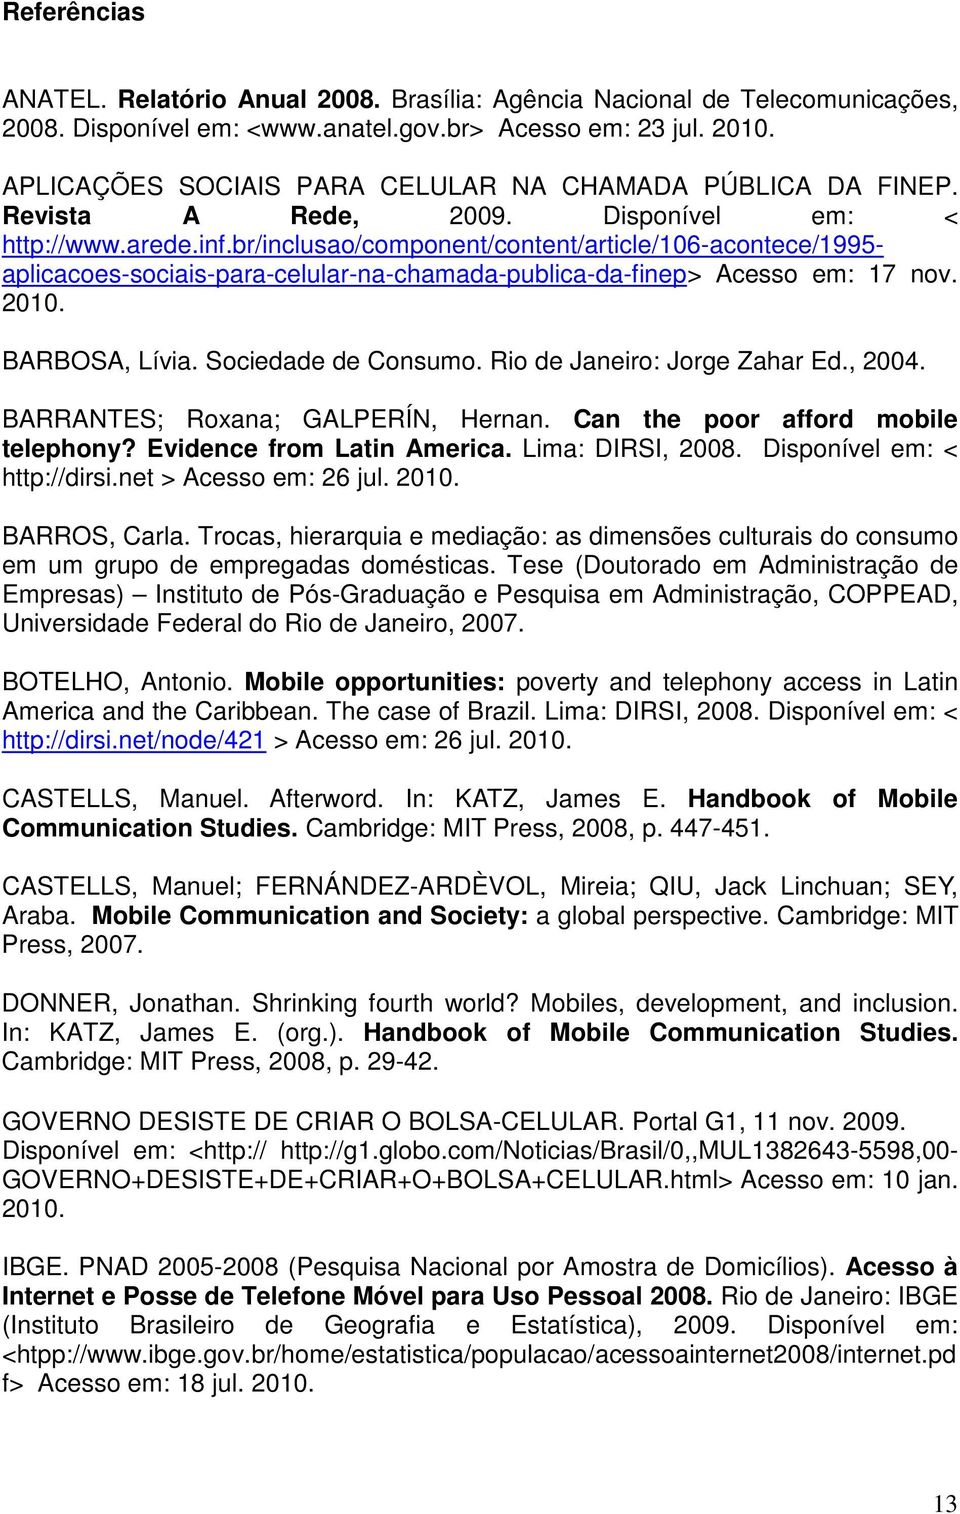 br/inclusao/component/content/article/106-acontece/1995- aplicacoes-sociais-para-celular-na-chamada-publica-da-finep> Acesso em: 17 nov. 2010. BARBOSA, Lívia. Sociedade de Consumo.